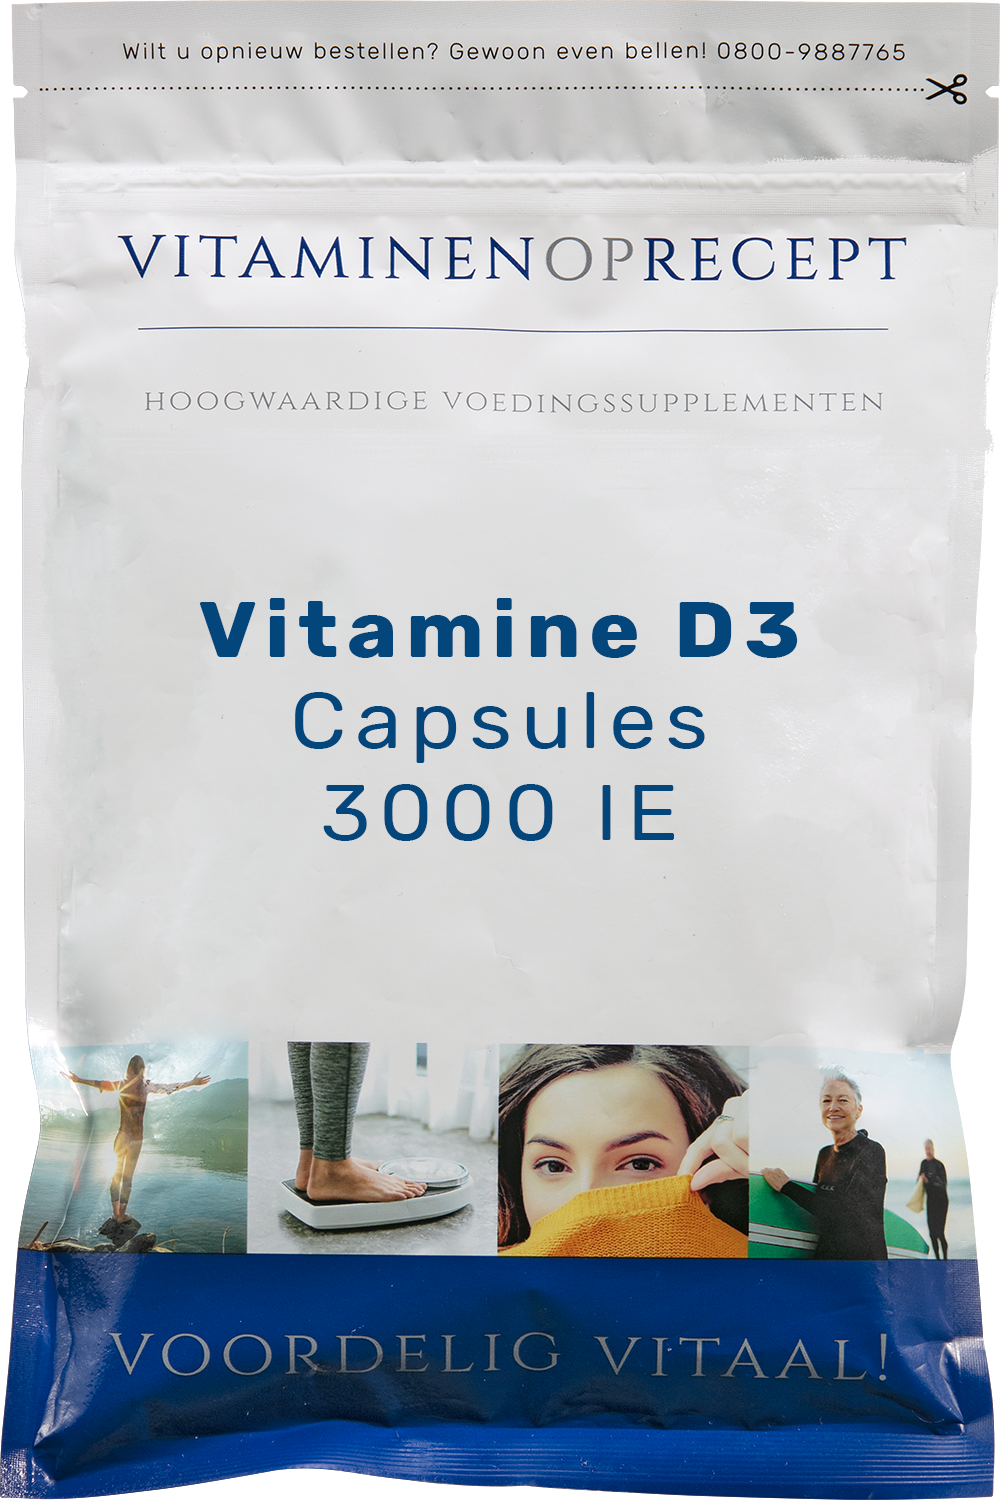 Corroderen lamp Paard Vitamine D3 - 3000 IE | Vitaminen op Recept